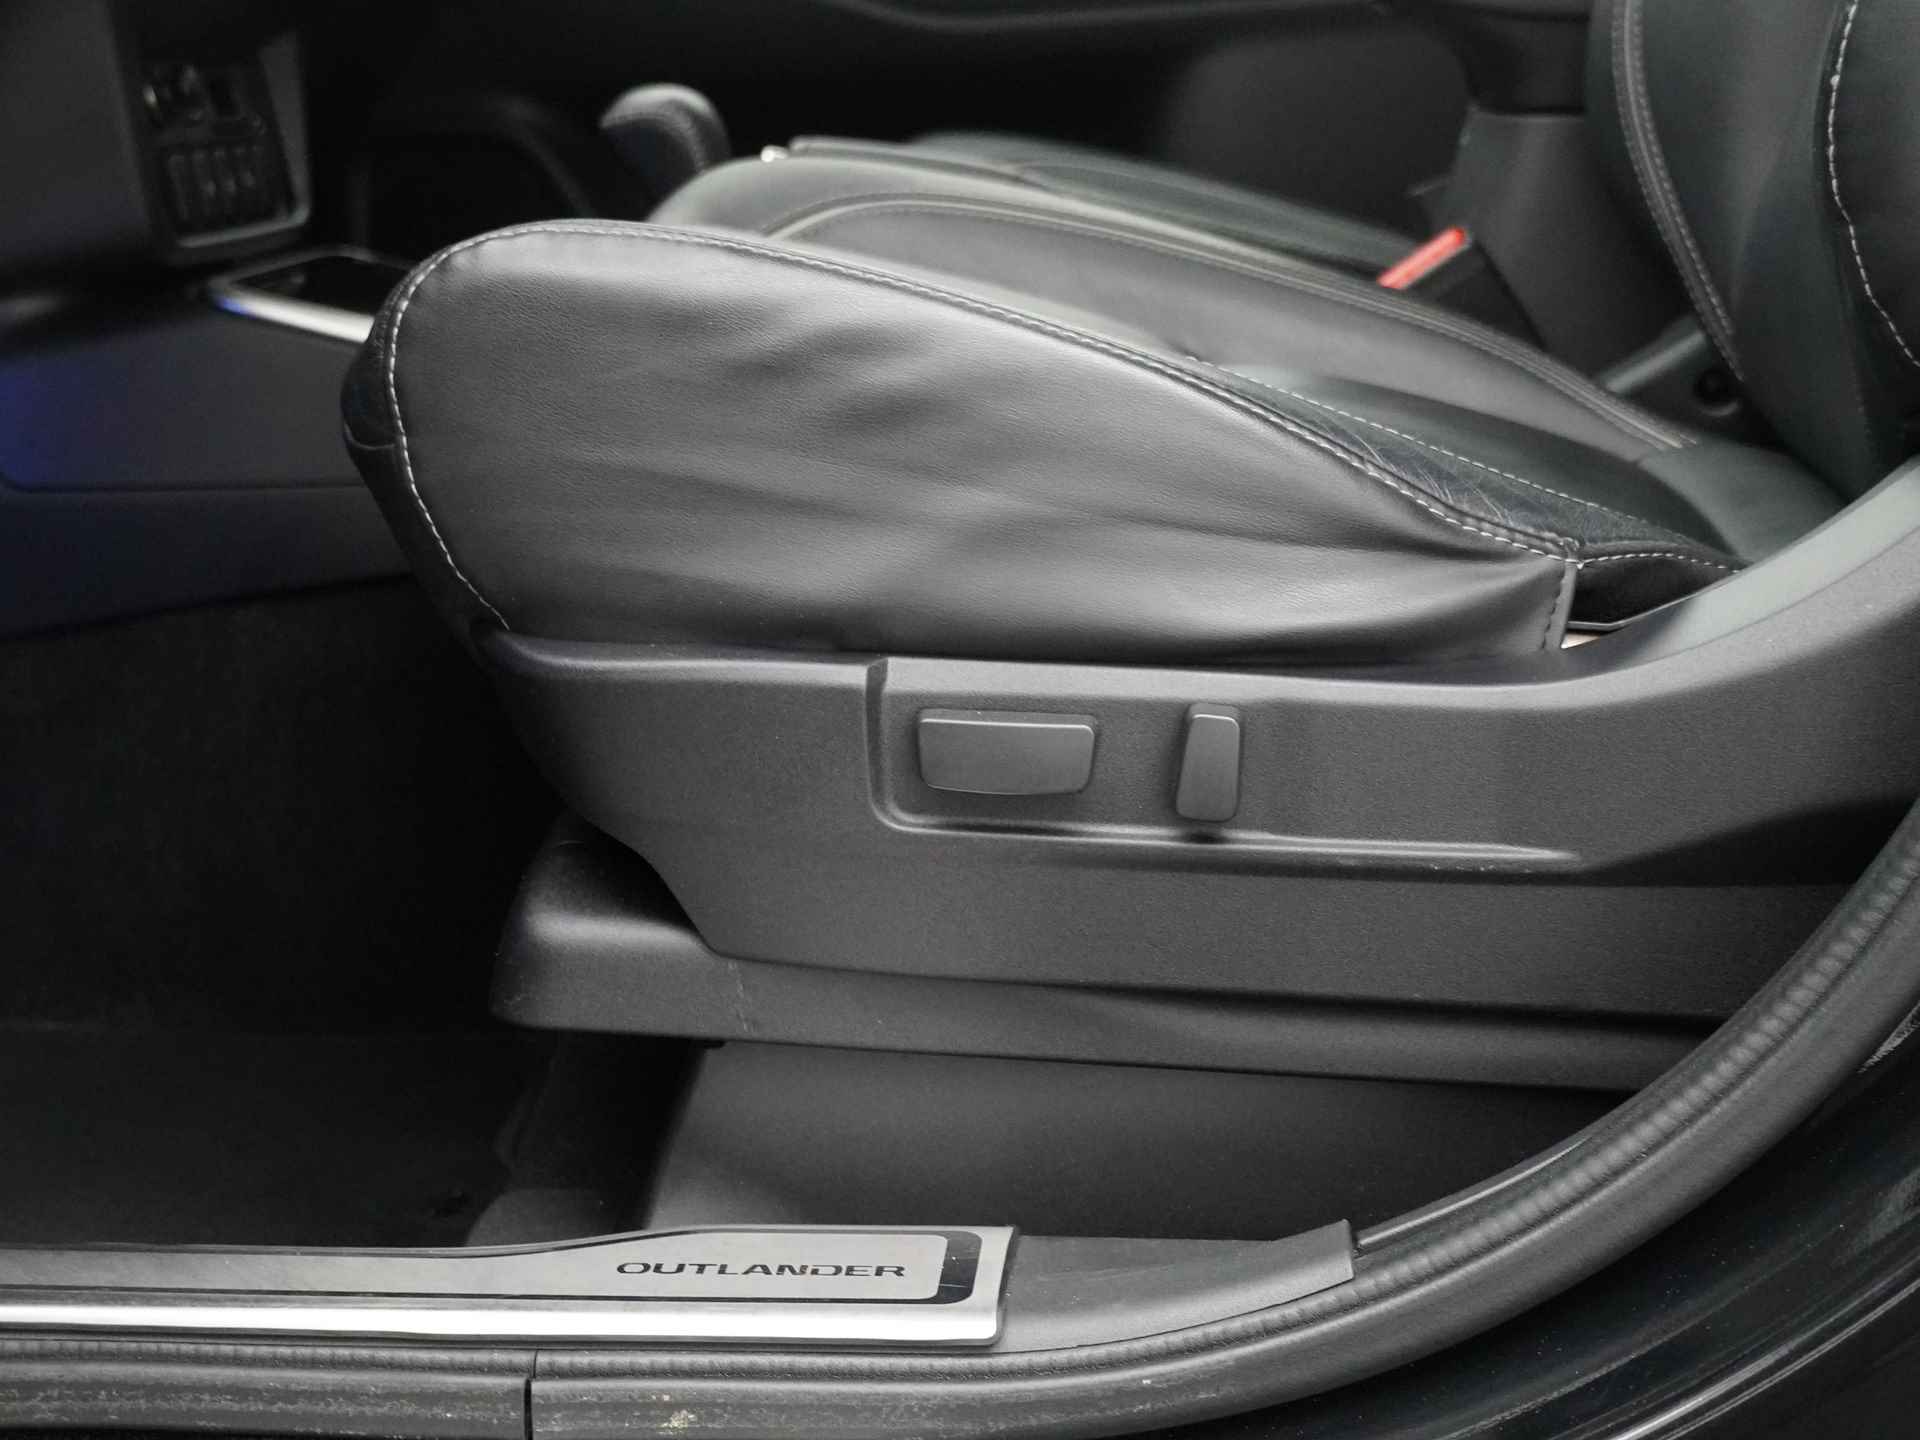 Mitsubishi Outlander 2.0 Instyle+ 4WD - Schuifkanteldak - Lederen bekleding - Voorraam verwarming - Apple CarPlay / Android Auto - Elektrische achterklep - 12 Maanden bovag garantie - 21/48